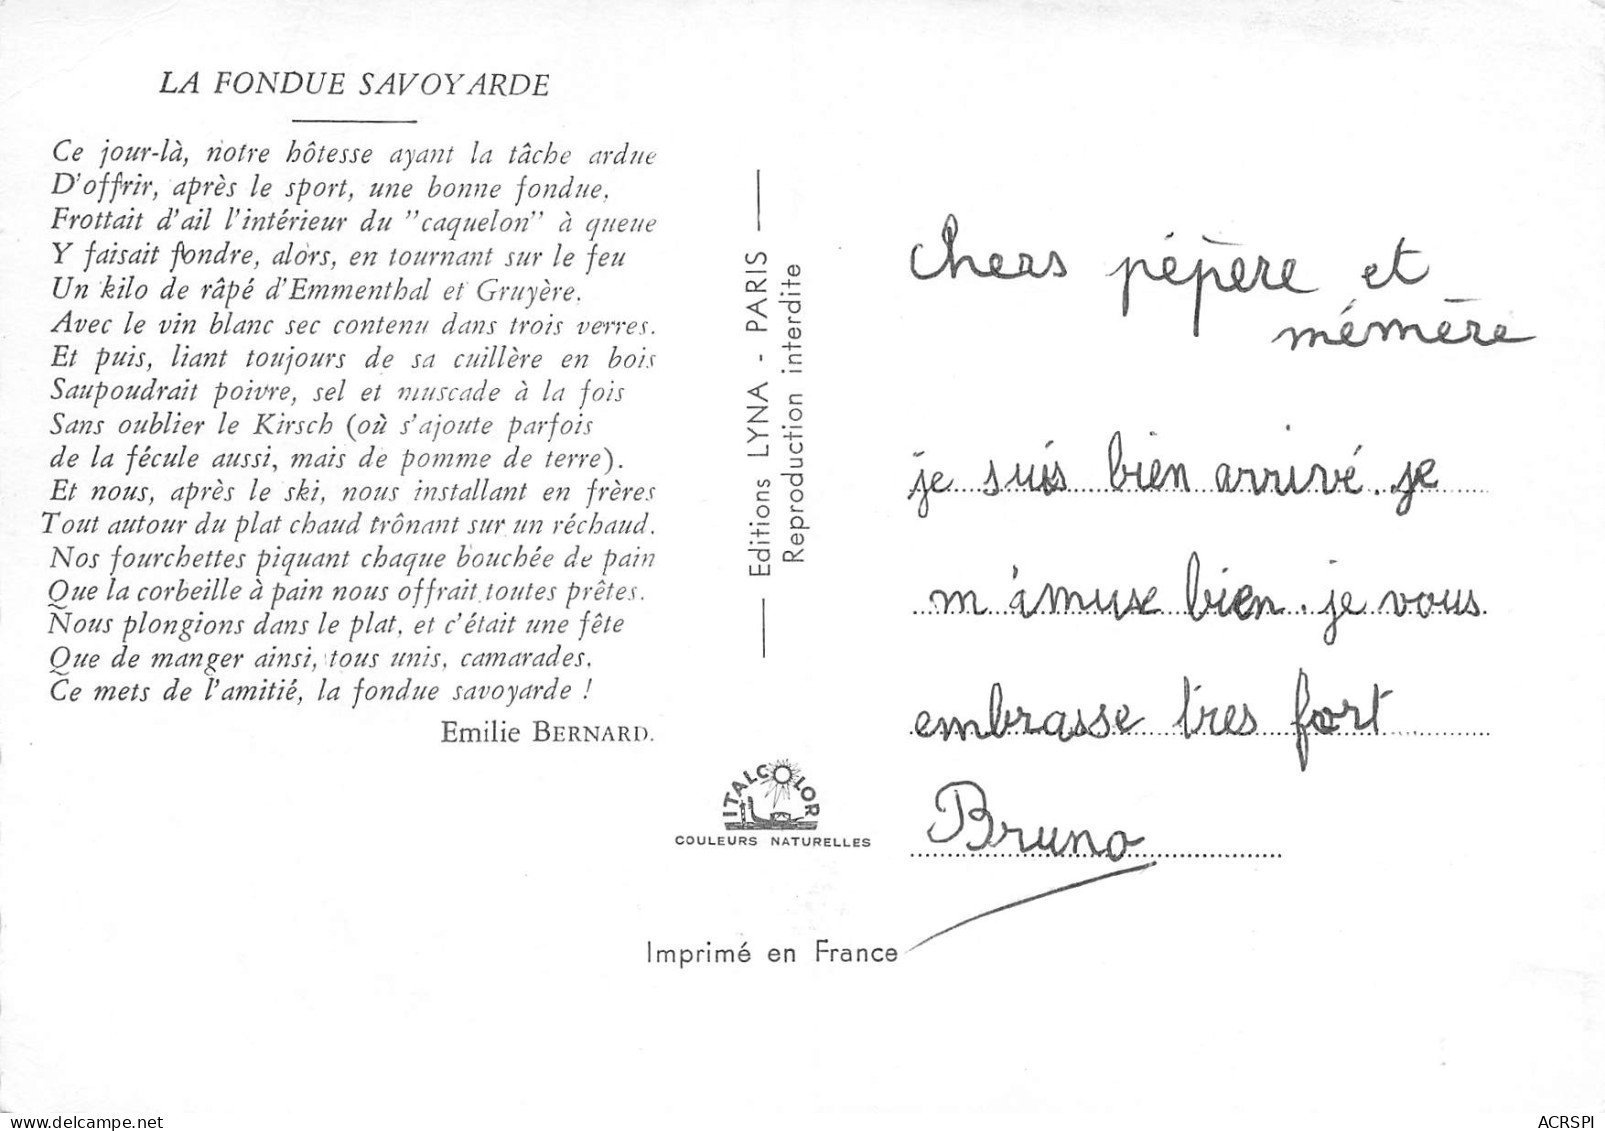 74 Recette De La FONDUE SAVOYARDE  Vin Apremont  48 (scan Recto Verso)MF2774VIC - Recipes (cooking)